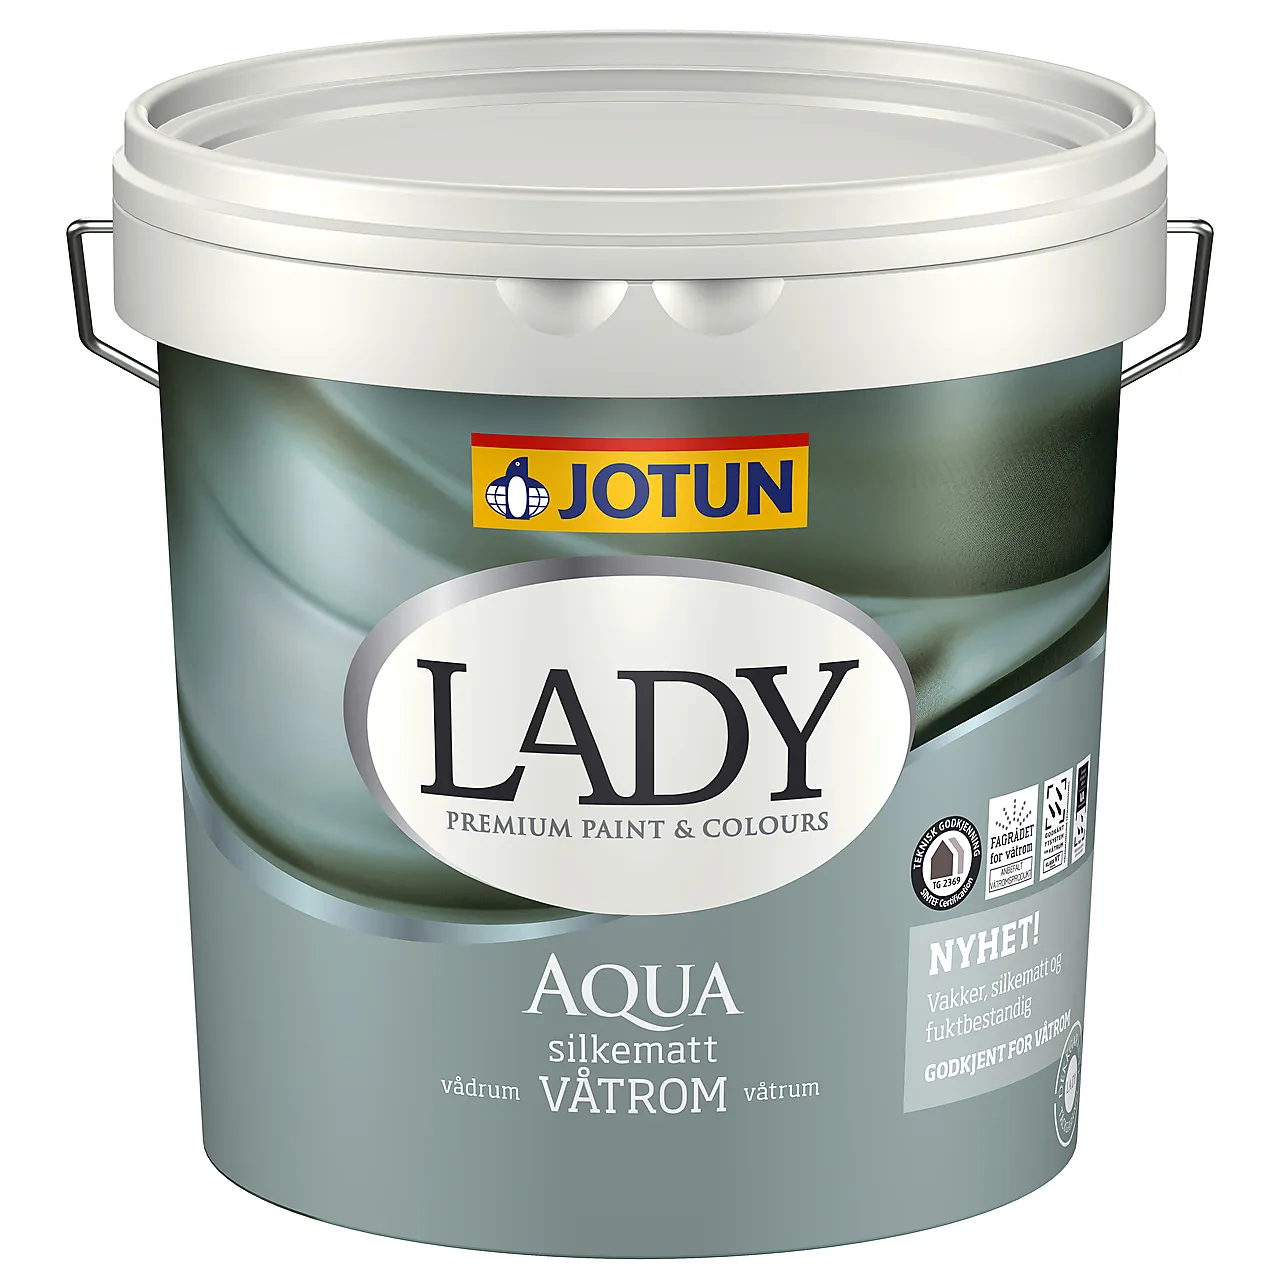 Lady Aqua b-base 2,7 liter